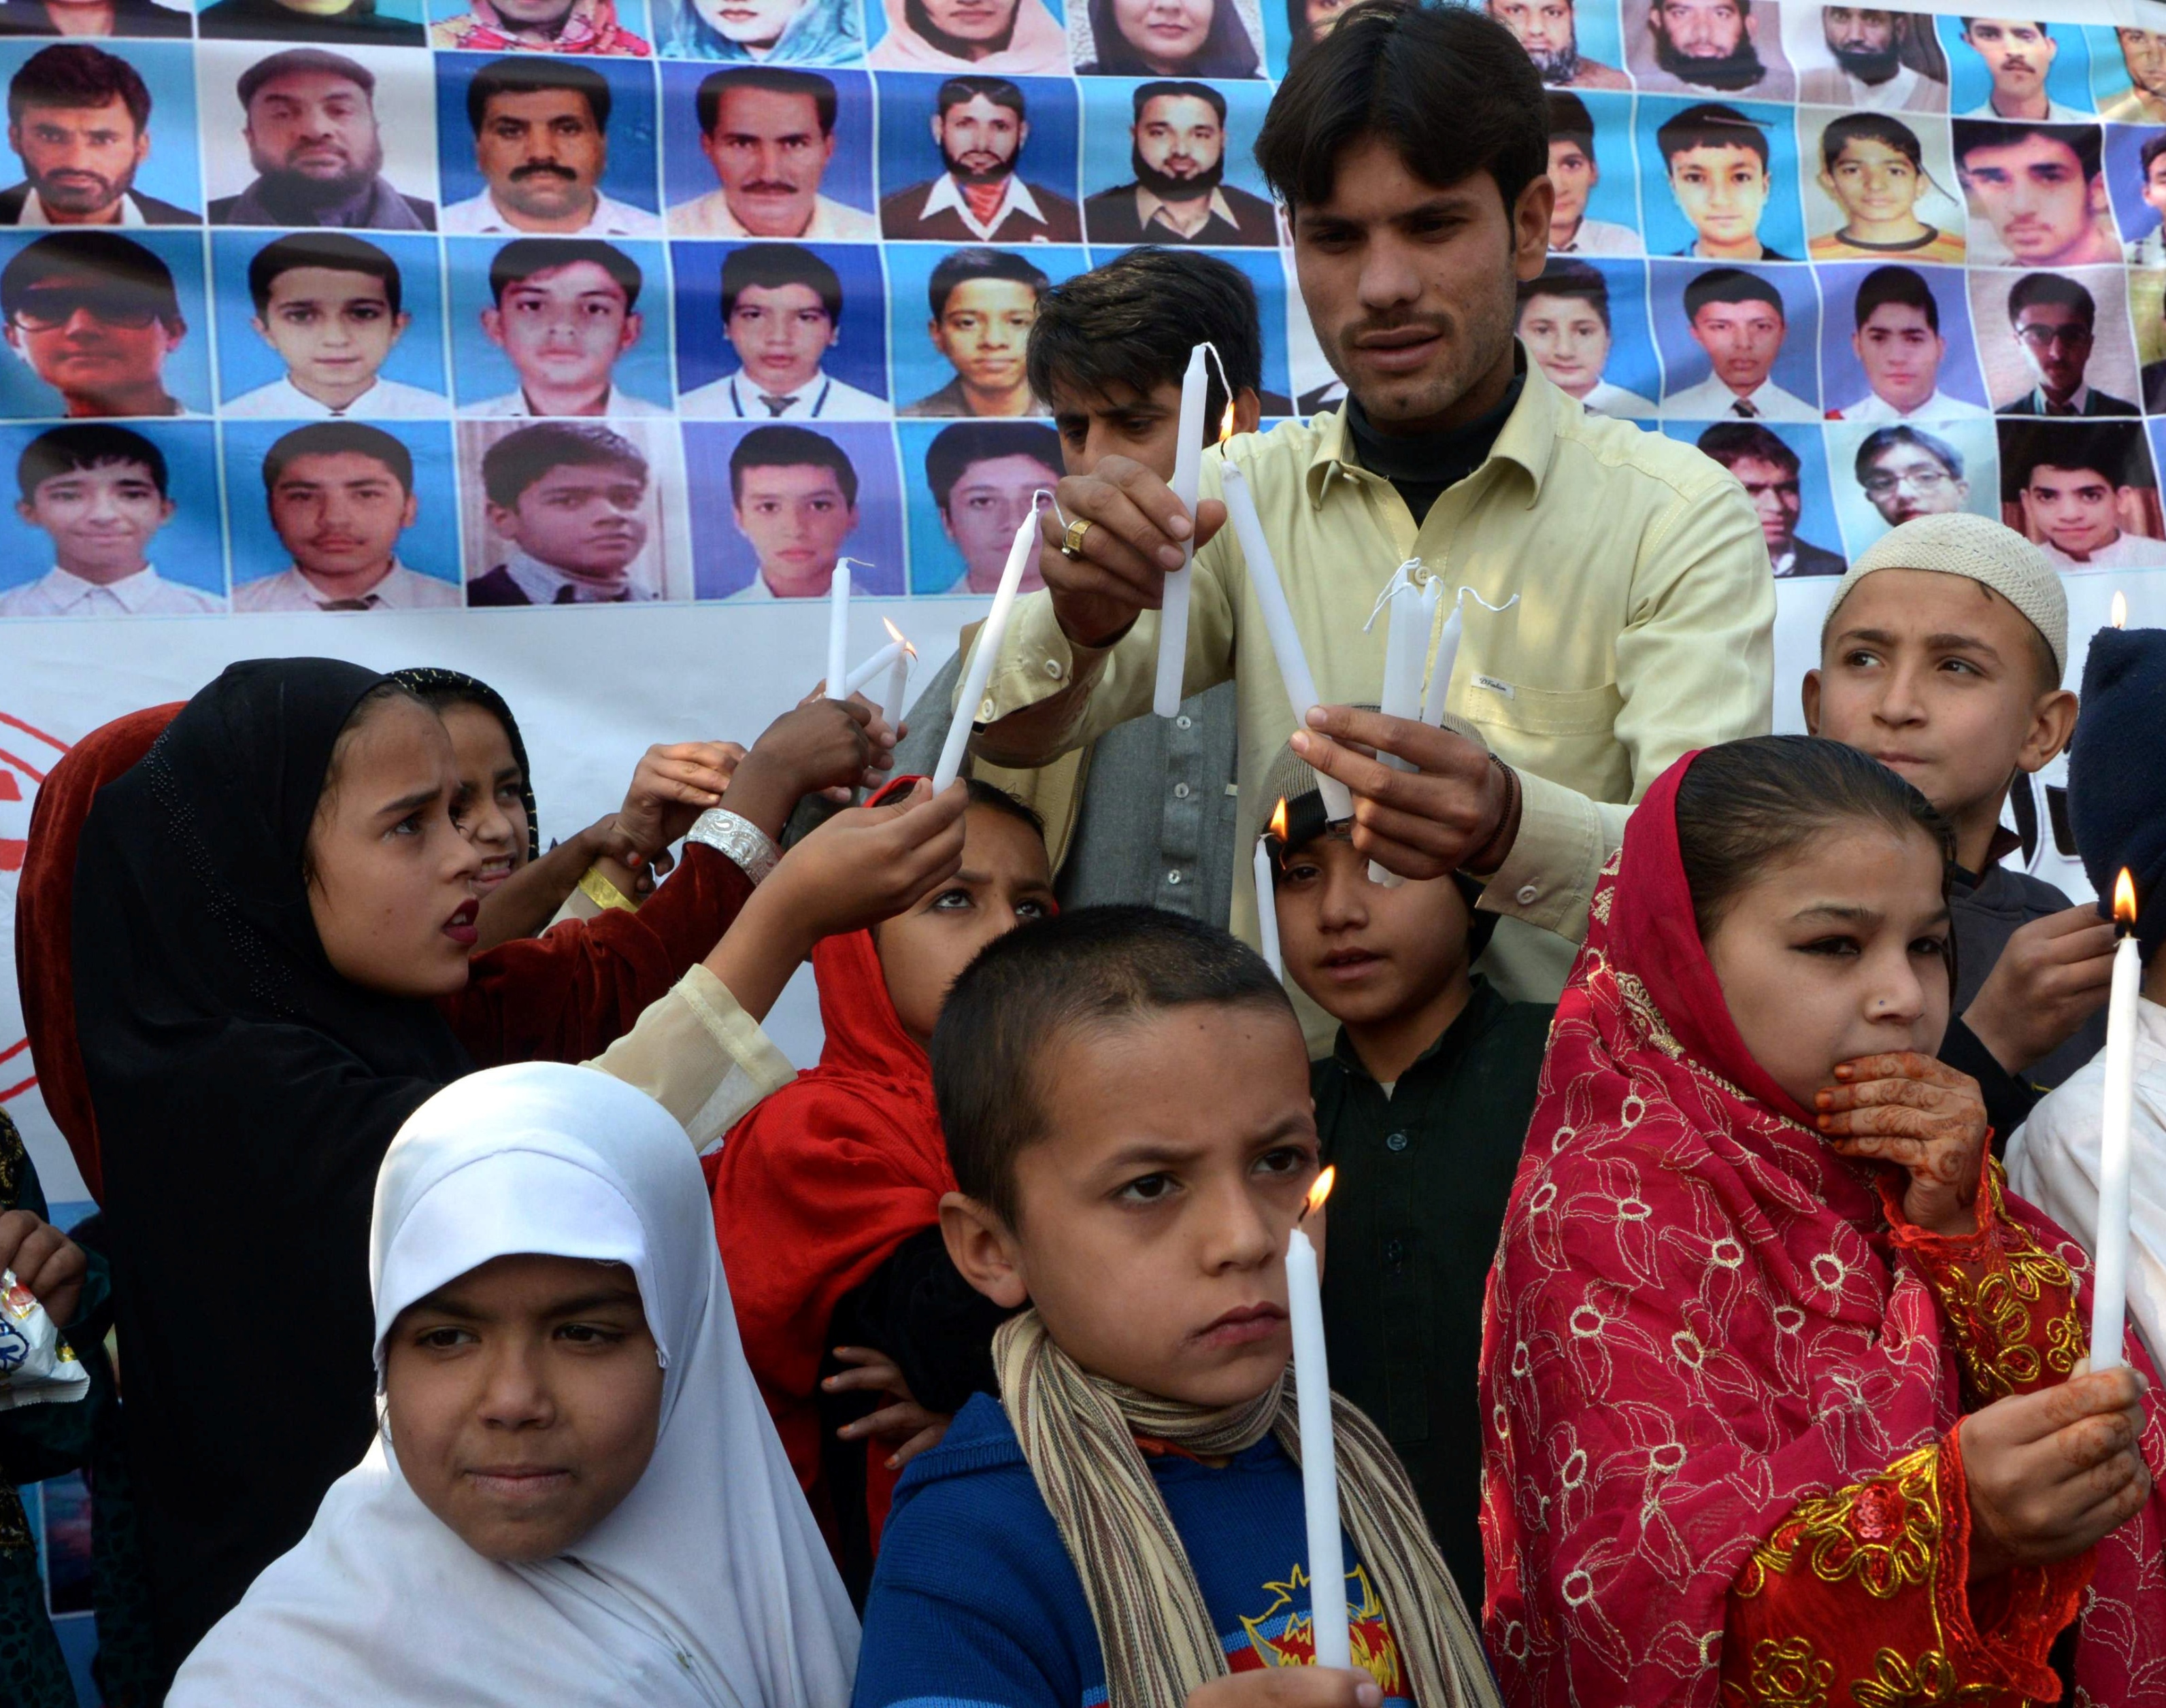 Angrepet på en skole i Peshawar i Pakistan i 2014 er et av de verste verden har sett. Her toårsdagen i desember.